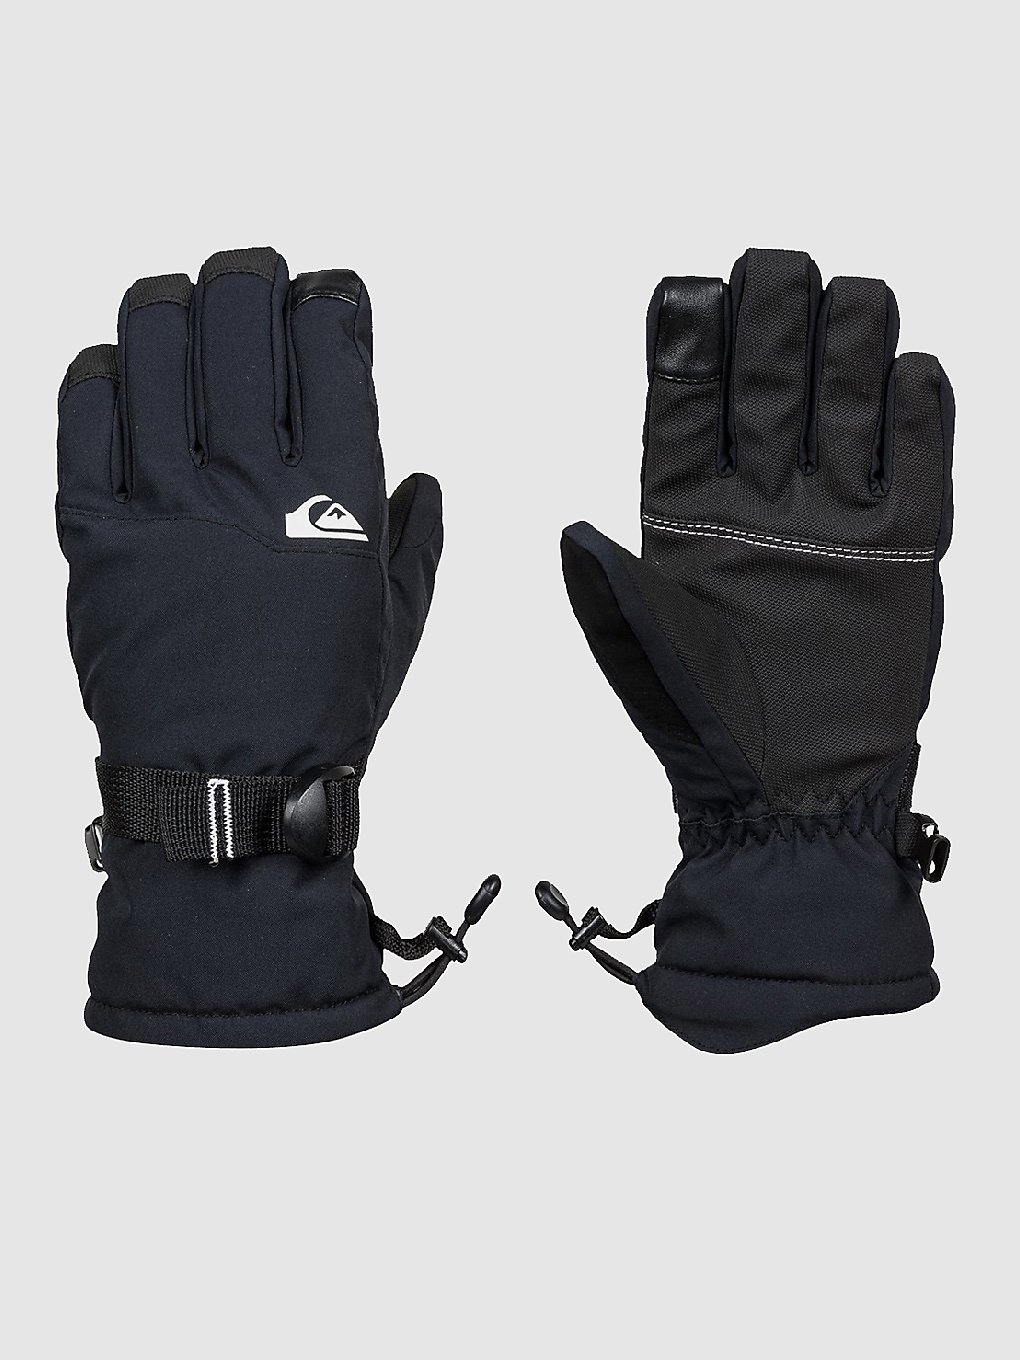 Quiksilver Mission Handschuhe true black kaufen